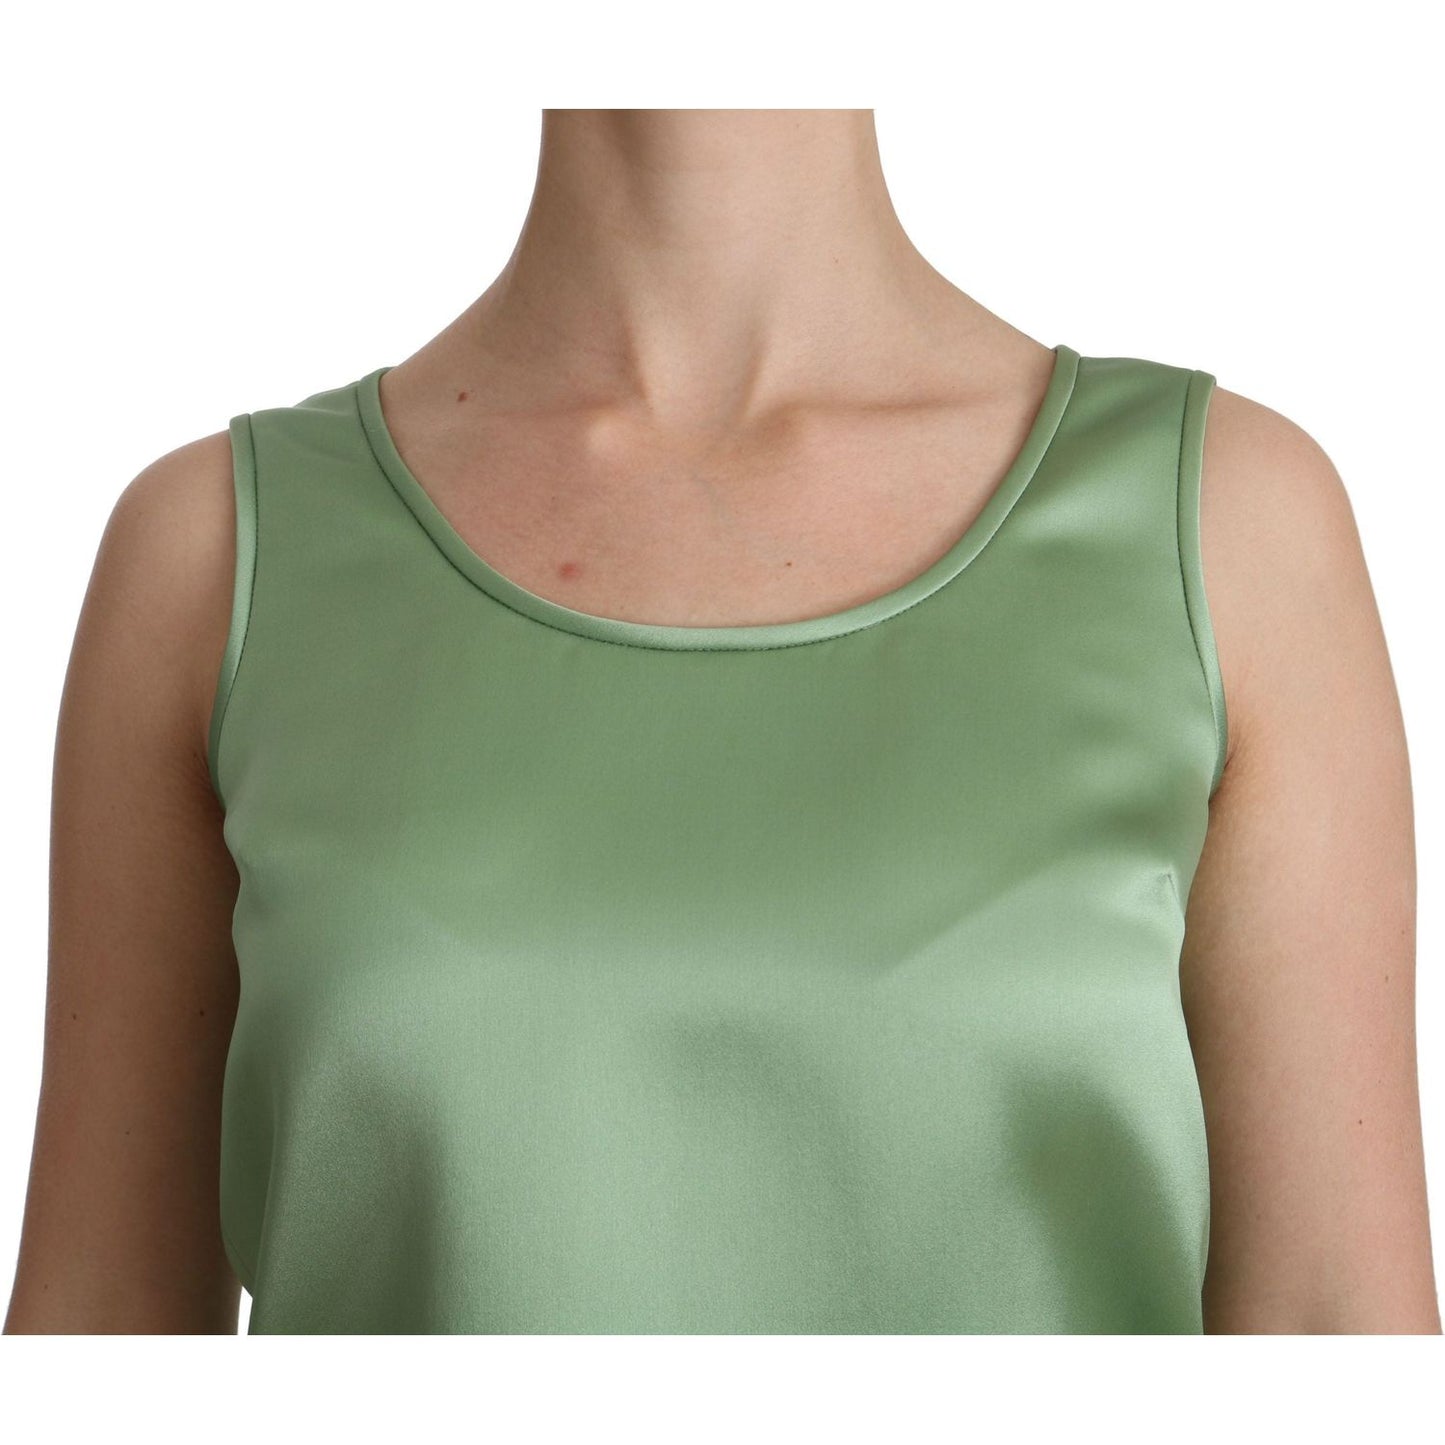 Dolce & Gabbana | Green Sleeveless 100% Silk Top Tank Blouse | McRichard Designer Brands